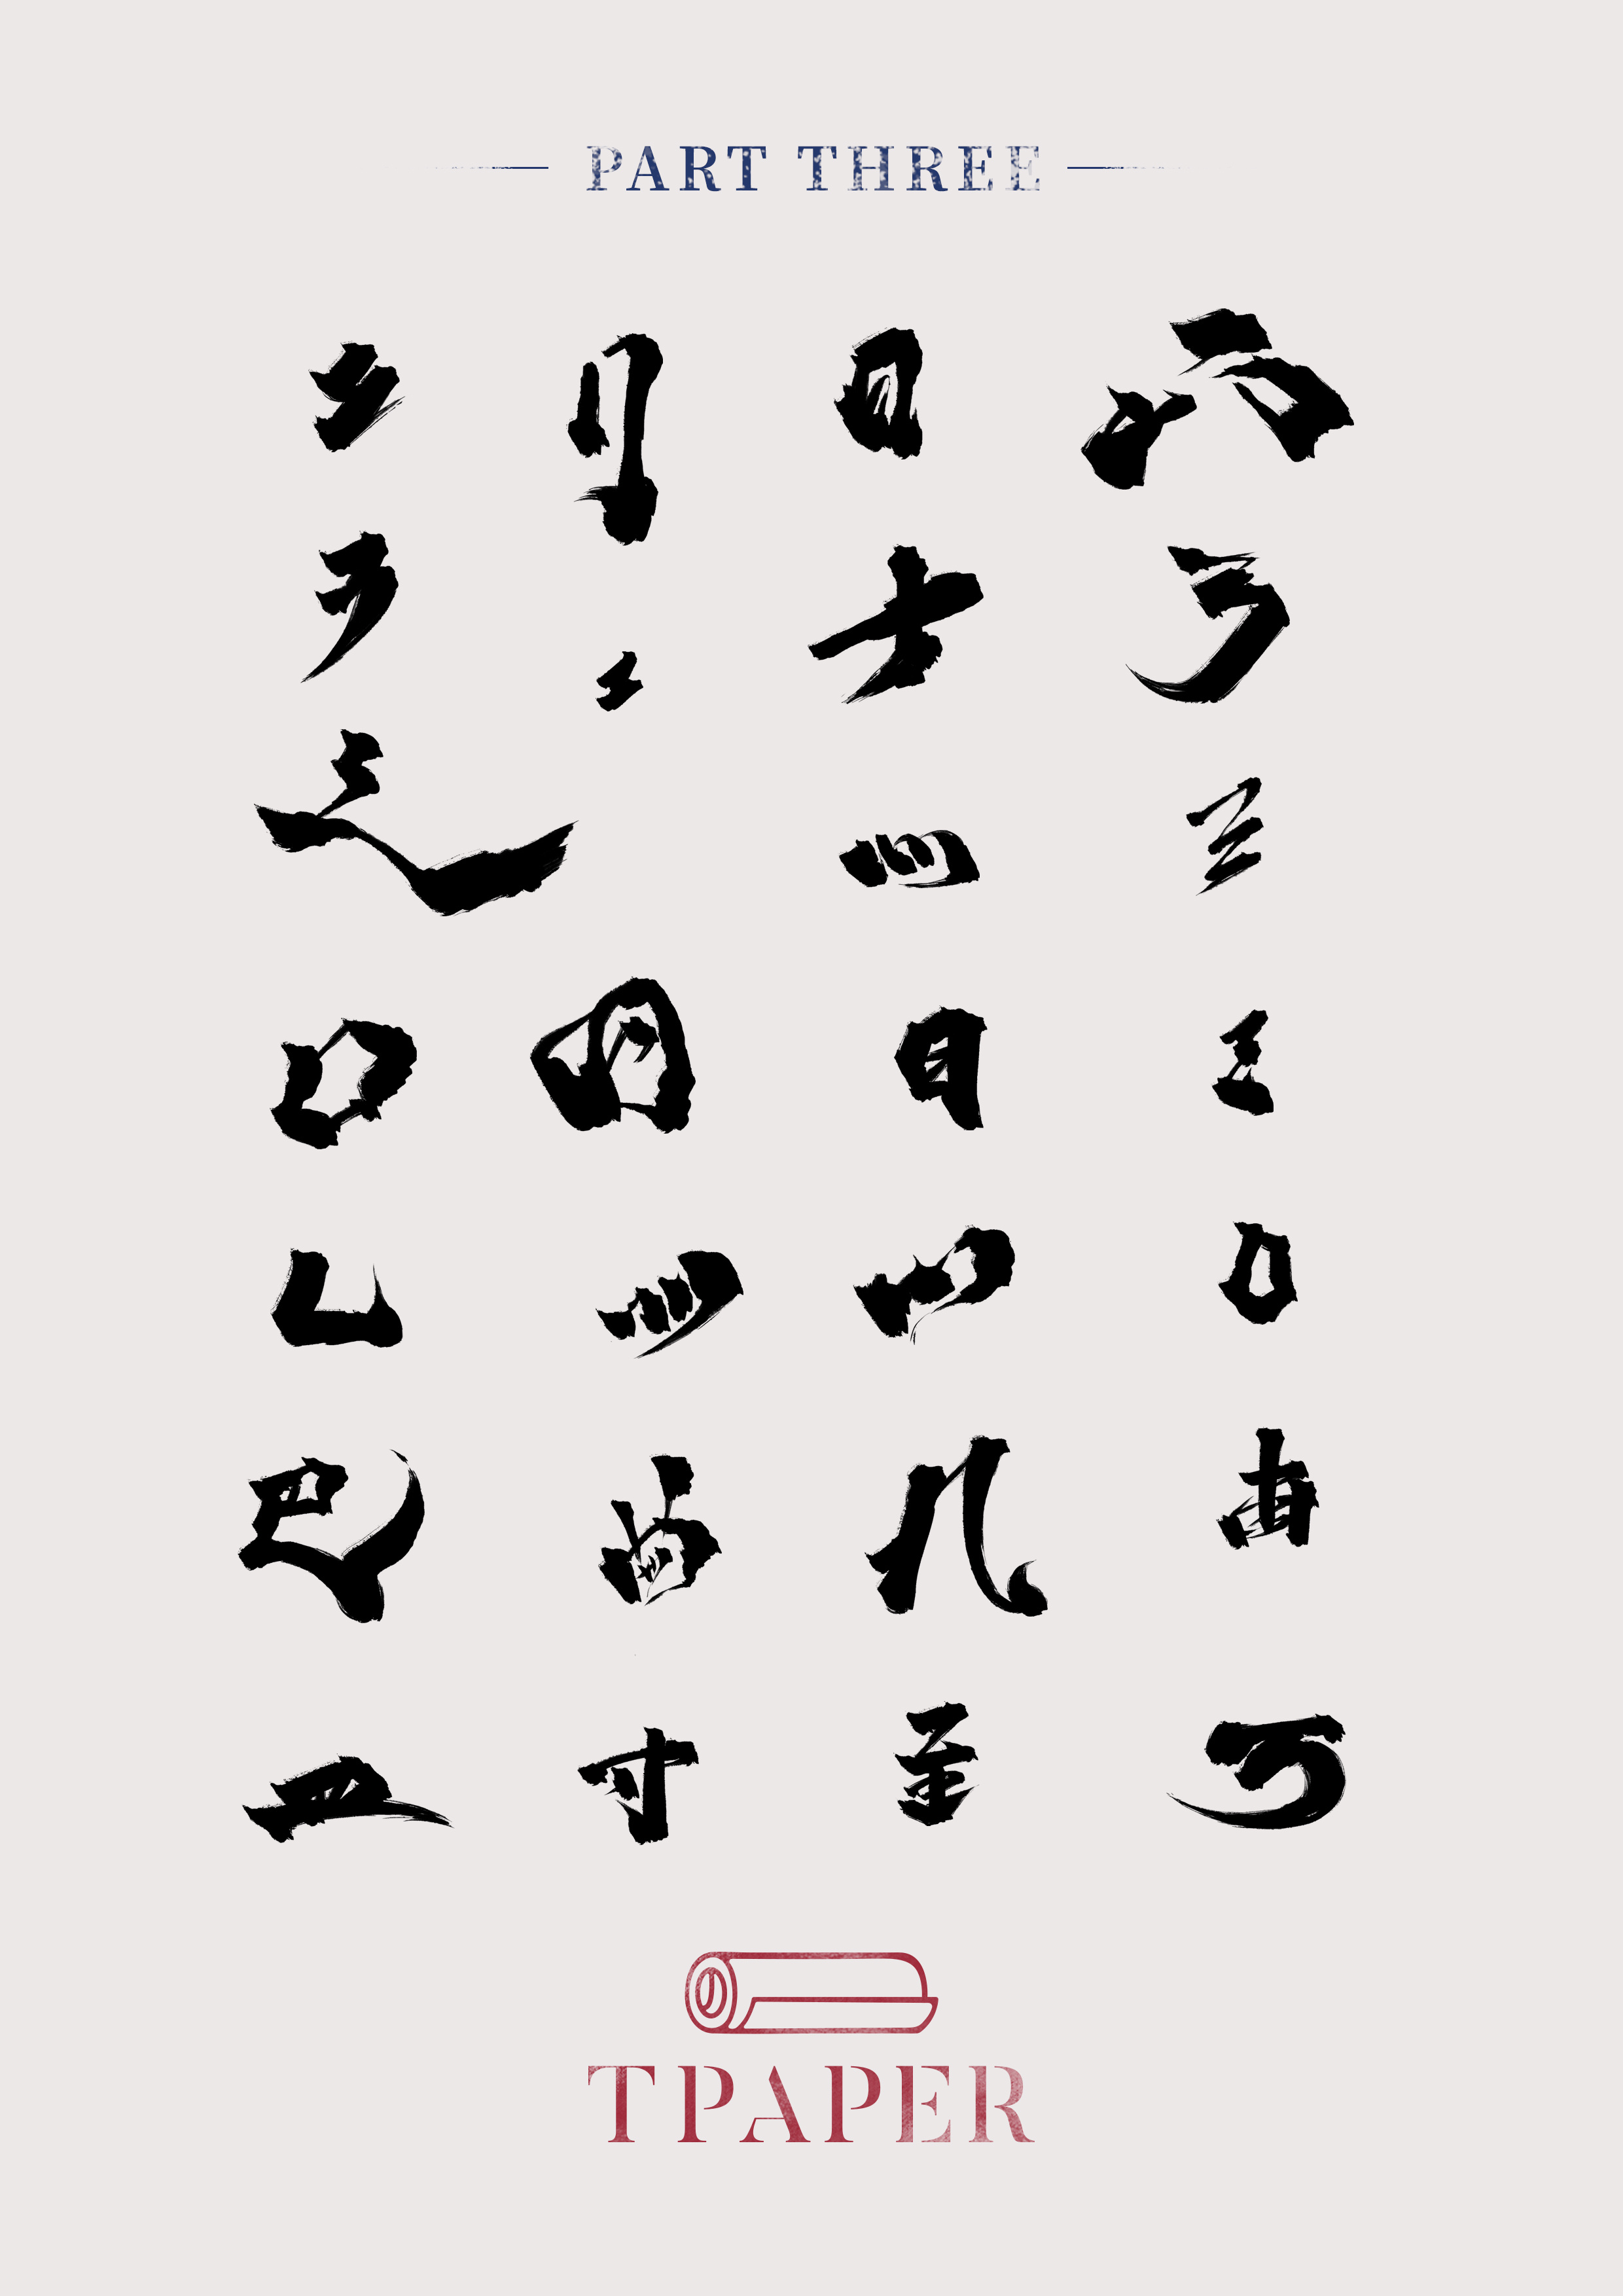 中国书法五种主要字体图片-爱学网